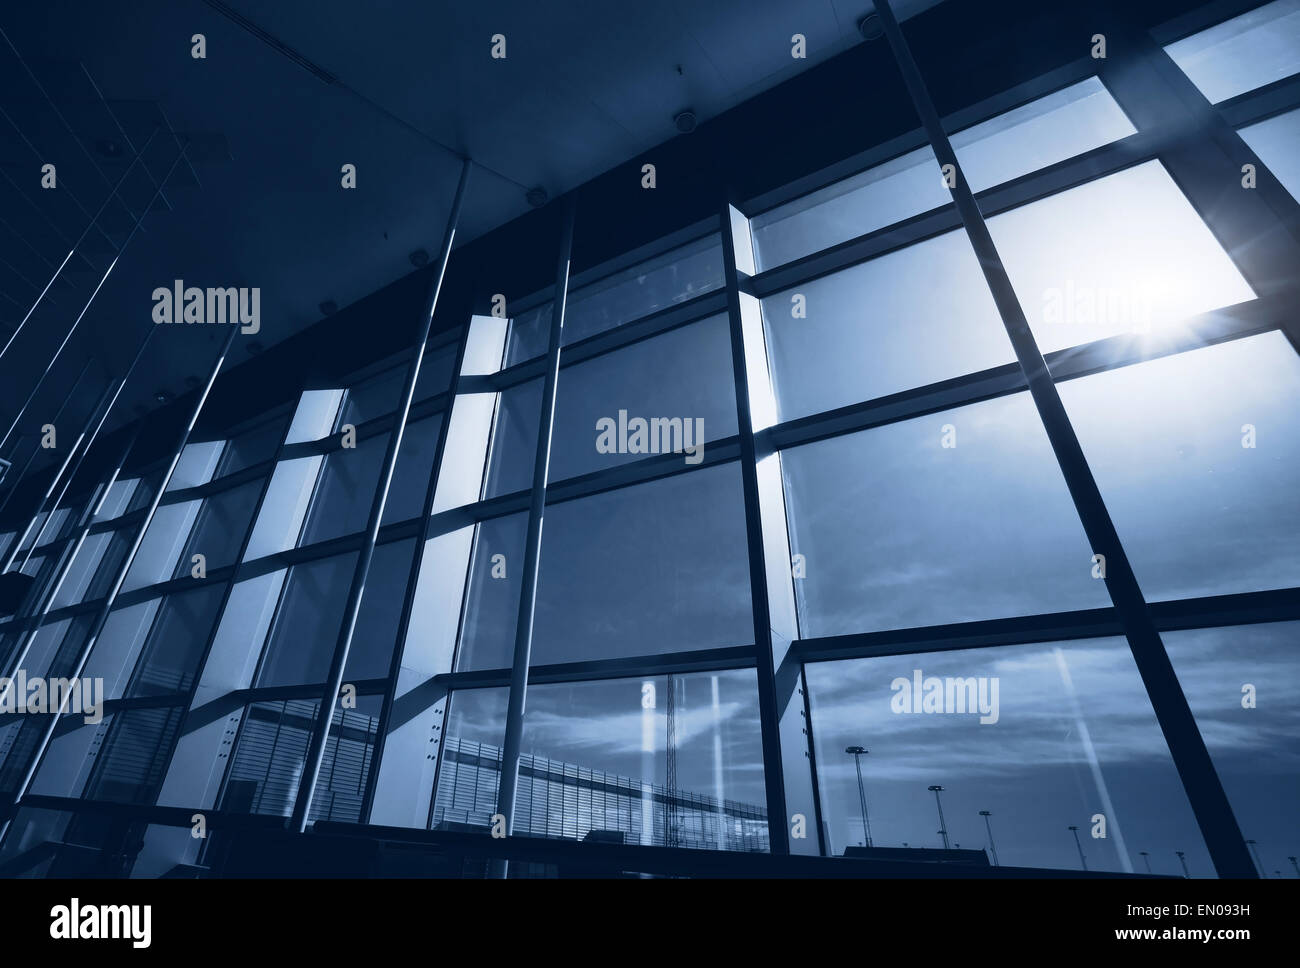 Résumé de l'intérieur de bâtiment de bureaux, fenêtre en verre bleu Banque D'Images